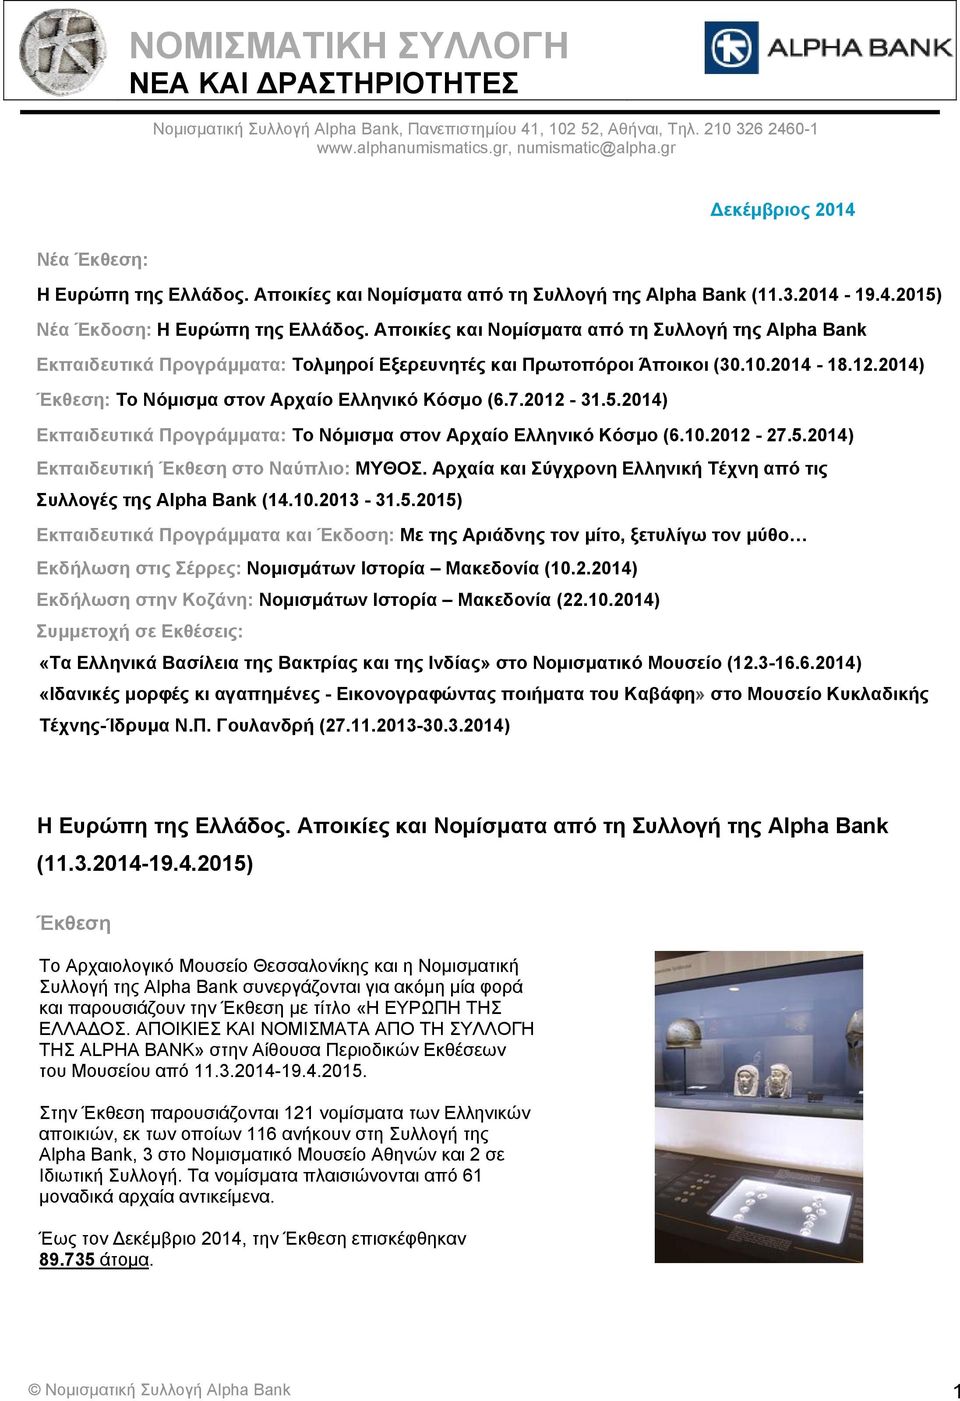 Αποικίες και Νομίσματα από τη Συλλογή της Alpha Bank Εκπαιδευτικά Προγράμματα: Τολμηροί Εξερευνητές και Πρωτοπόροι Άποικοι (30.10.2014-18.12.2014) Έκθεση: Το Νόμισμα στον Αρχαίο Ελληνικό Κόσμο (6.7.